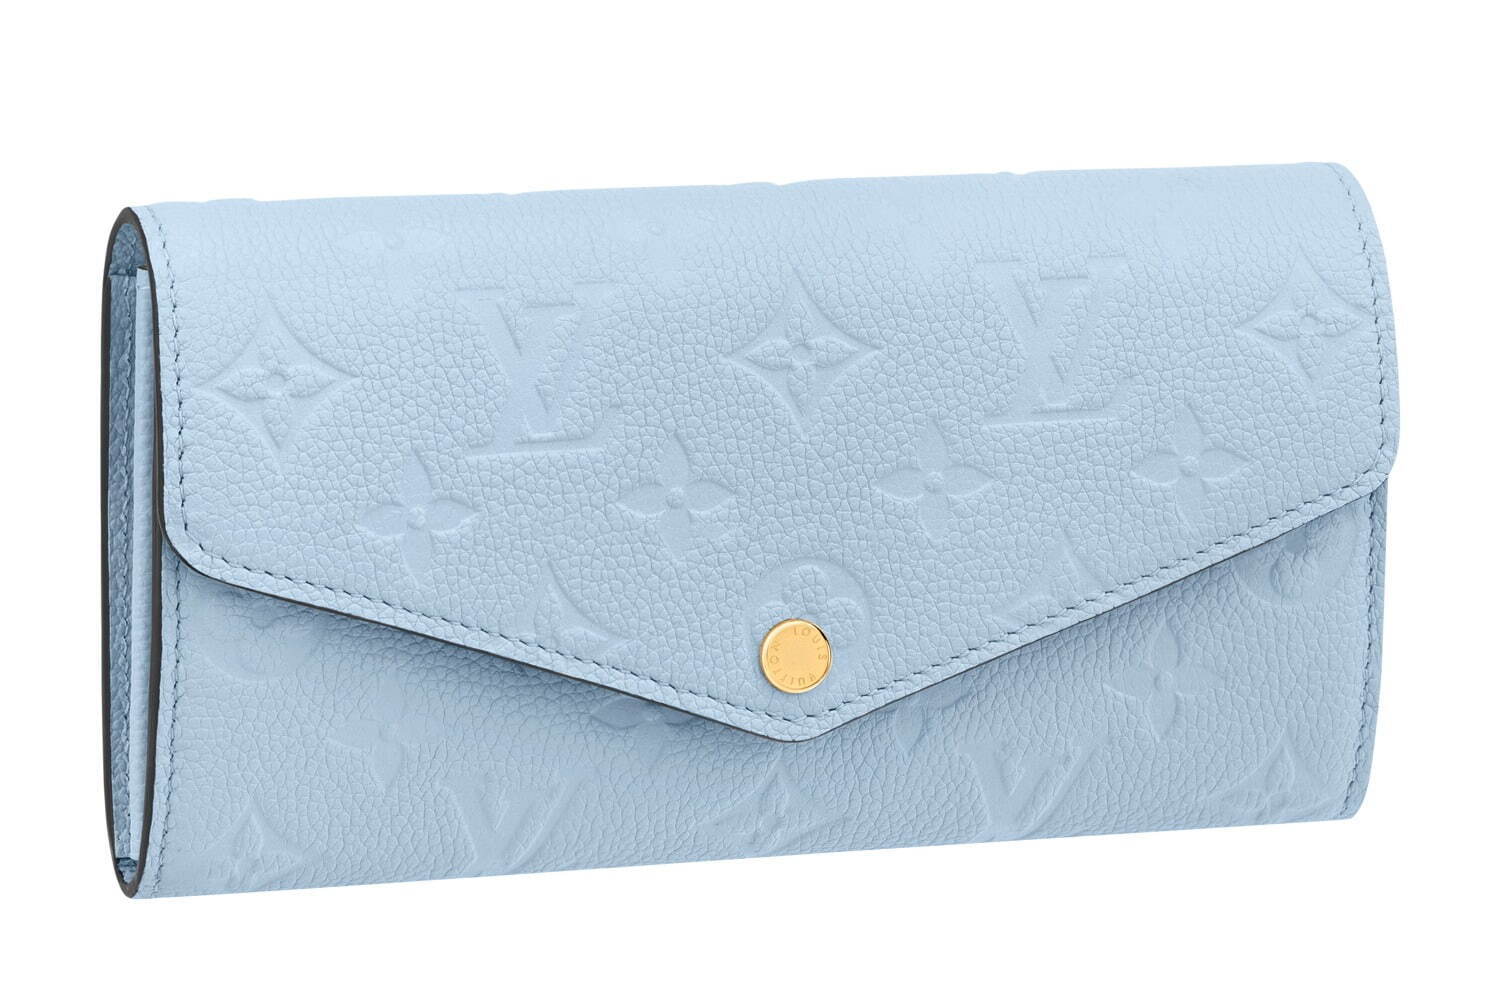 〈ルイ・ヴィトン〉モノグラム・パターンを配したライトブルーのレザー長財布